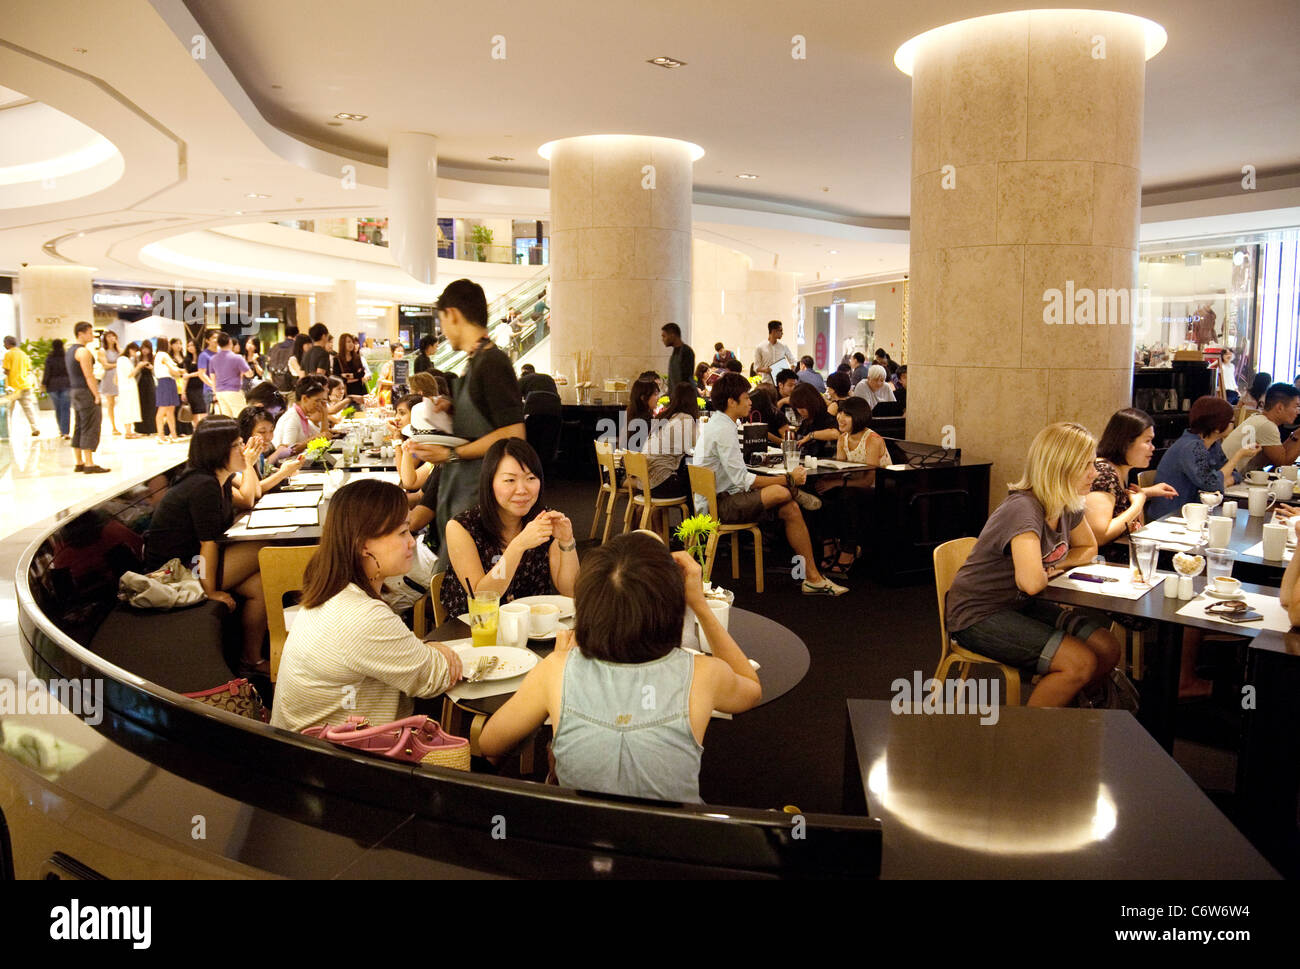 Scena in un ristorante affollato Ion shopping mall, Orchard Road, Singapore asia Foto Stock